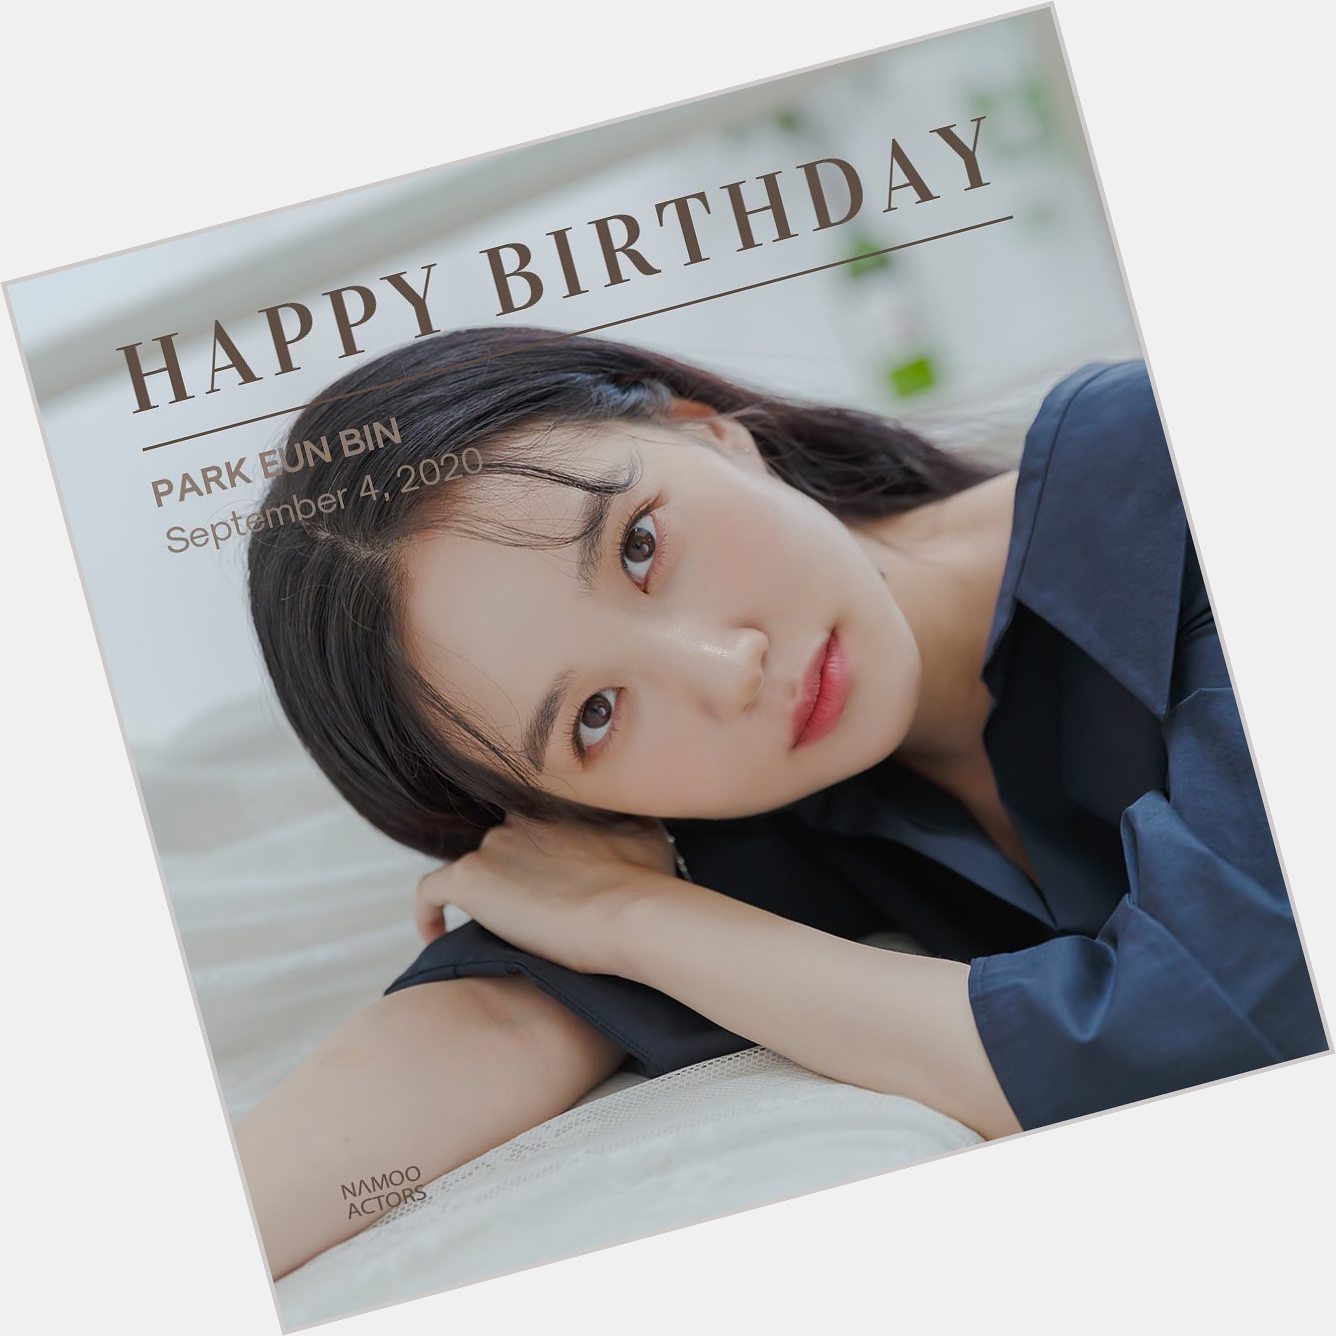 Happy birthday Park Eun Bin      